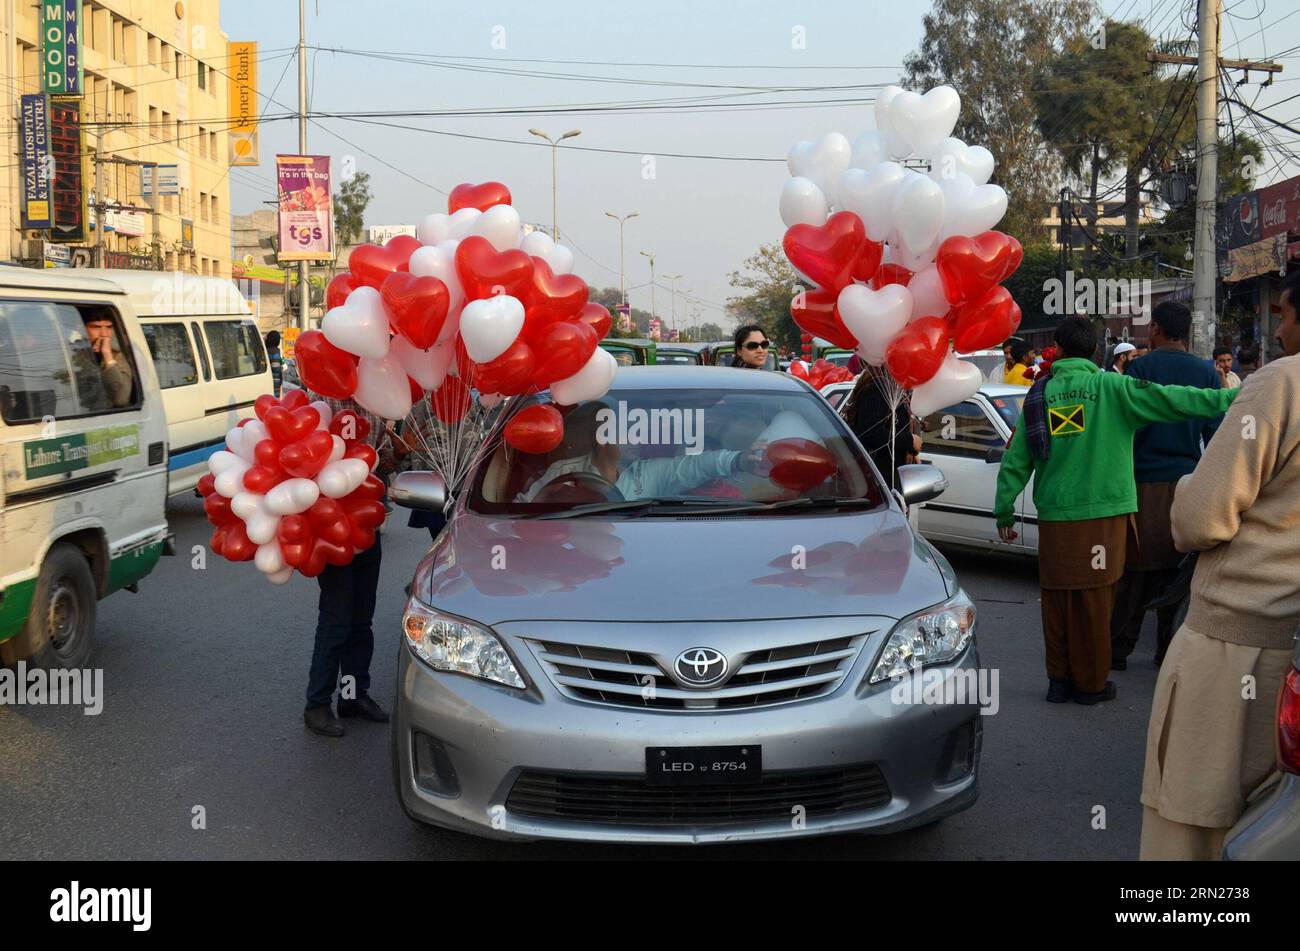 (150214) -- LAHORE, 14 février 2015 -- des ballons en forme de cœur sont attachés à une voiture le jour de la Saint-Valentin à Lahore, dans l'est du Pakistan, le 14 février 2015. )(bxq) PAKISTAN-LAHORE-VALENTINE S DAY JamilxAhmed PUBLICATIONxNOTxINxCHN Lahore 14 2015 février ballons en forme de coeur sont attachés à une voiture LE jour de la Saint-Valentin S dans l'est du Pakistan S Lahore février 14 2015 Pakistan Lahore Saint-Valentin PUBLICATIONxNOTxINxCHN Banque D'Images